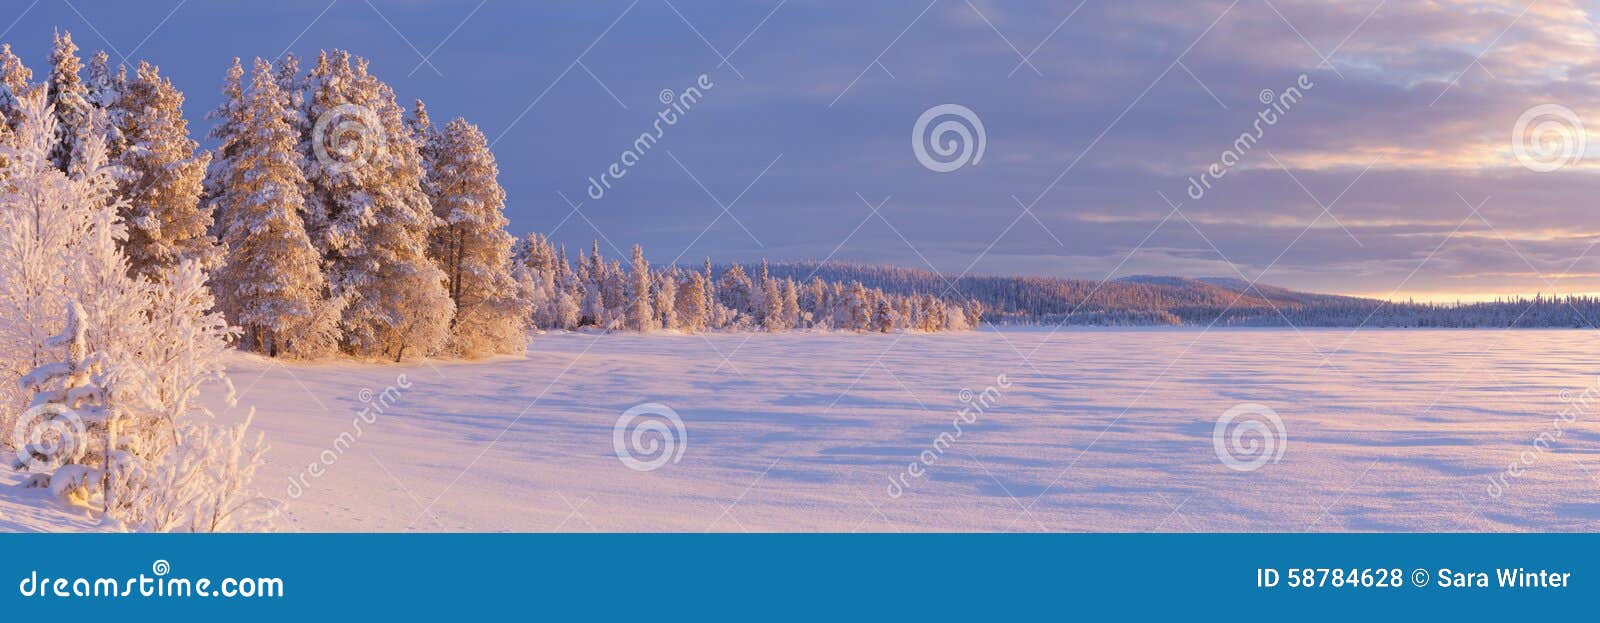 frozen ÃâijÃÂ¤jÃÂ¤rvi lake in finnish lapland in winter